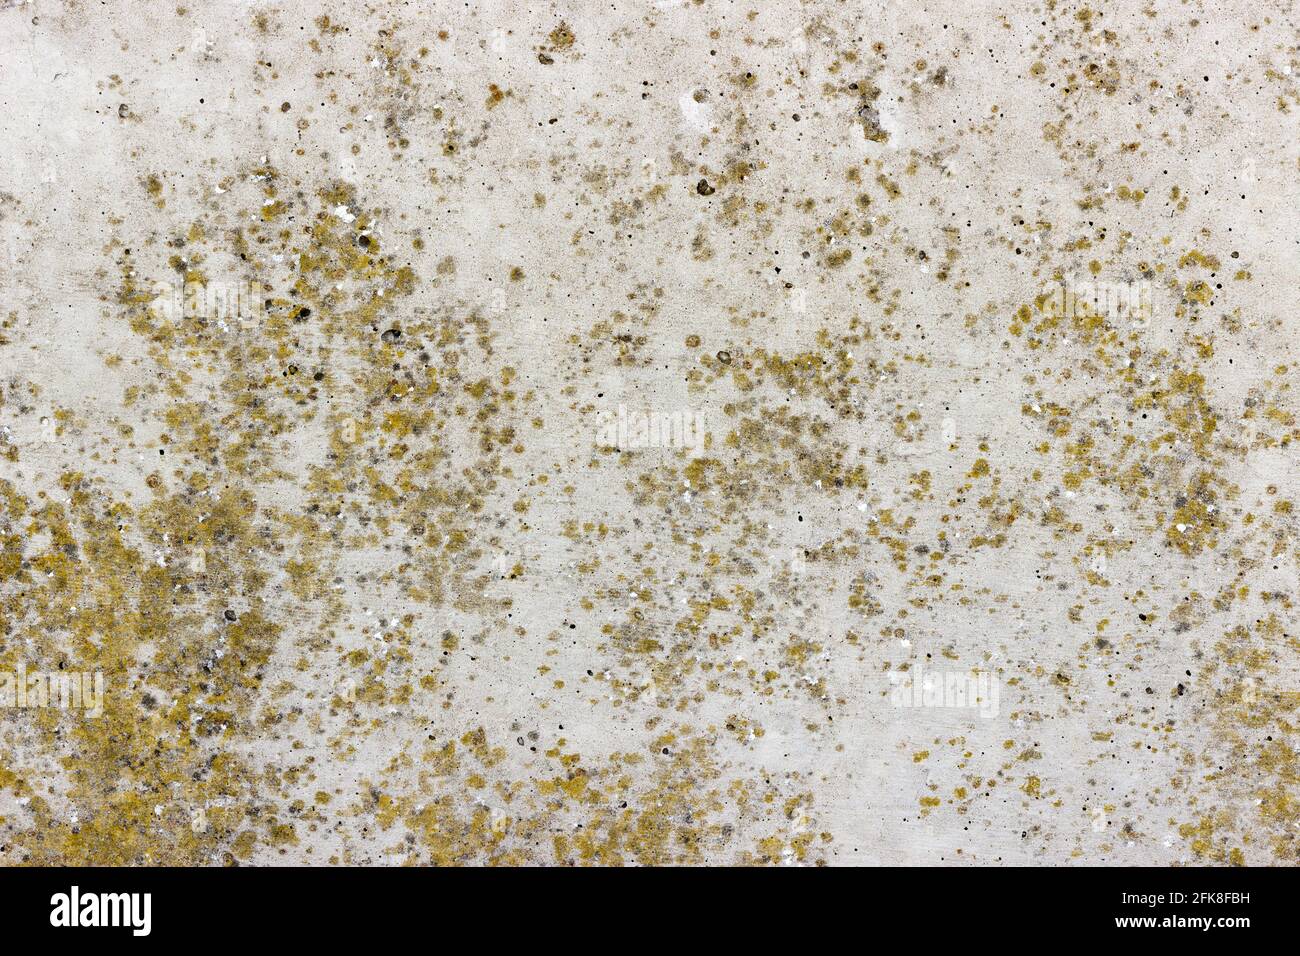 Una superficie piana di cemento grigio con macchie gialle di lichene Foto Stock